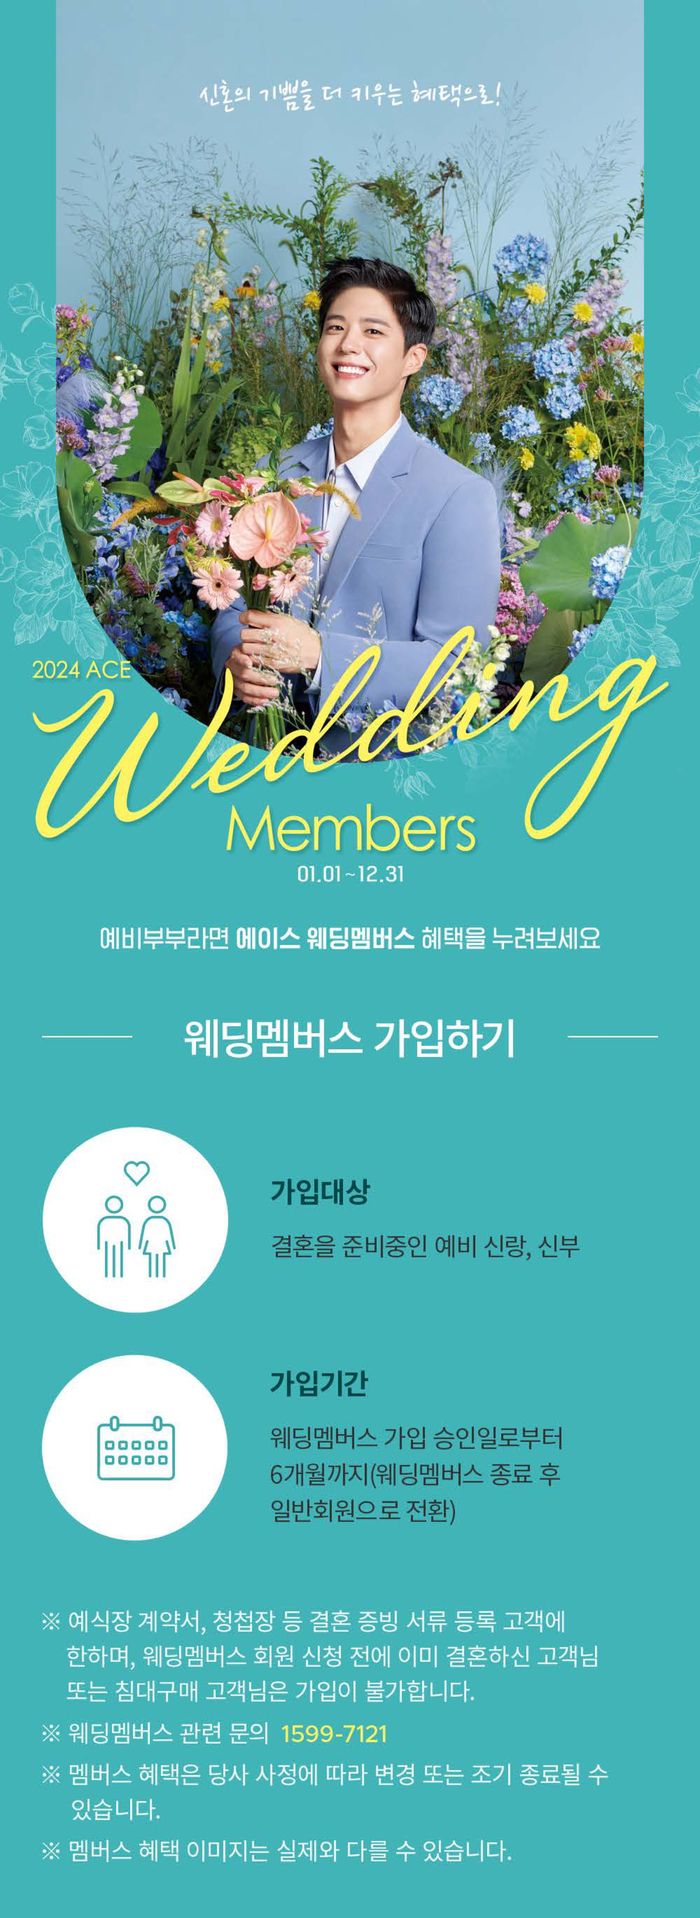 광주광역시의 에이스침대 카탈로그 | Weeding Members | 2024. 1. 26. - 2024. 12. 31.